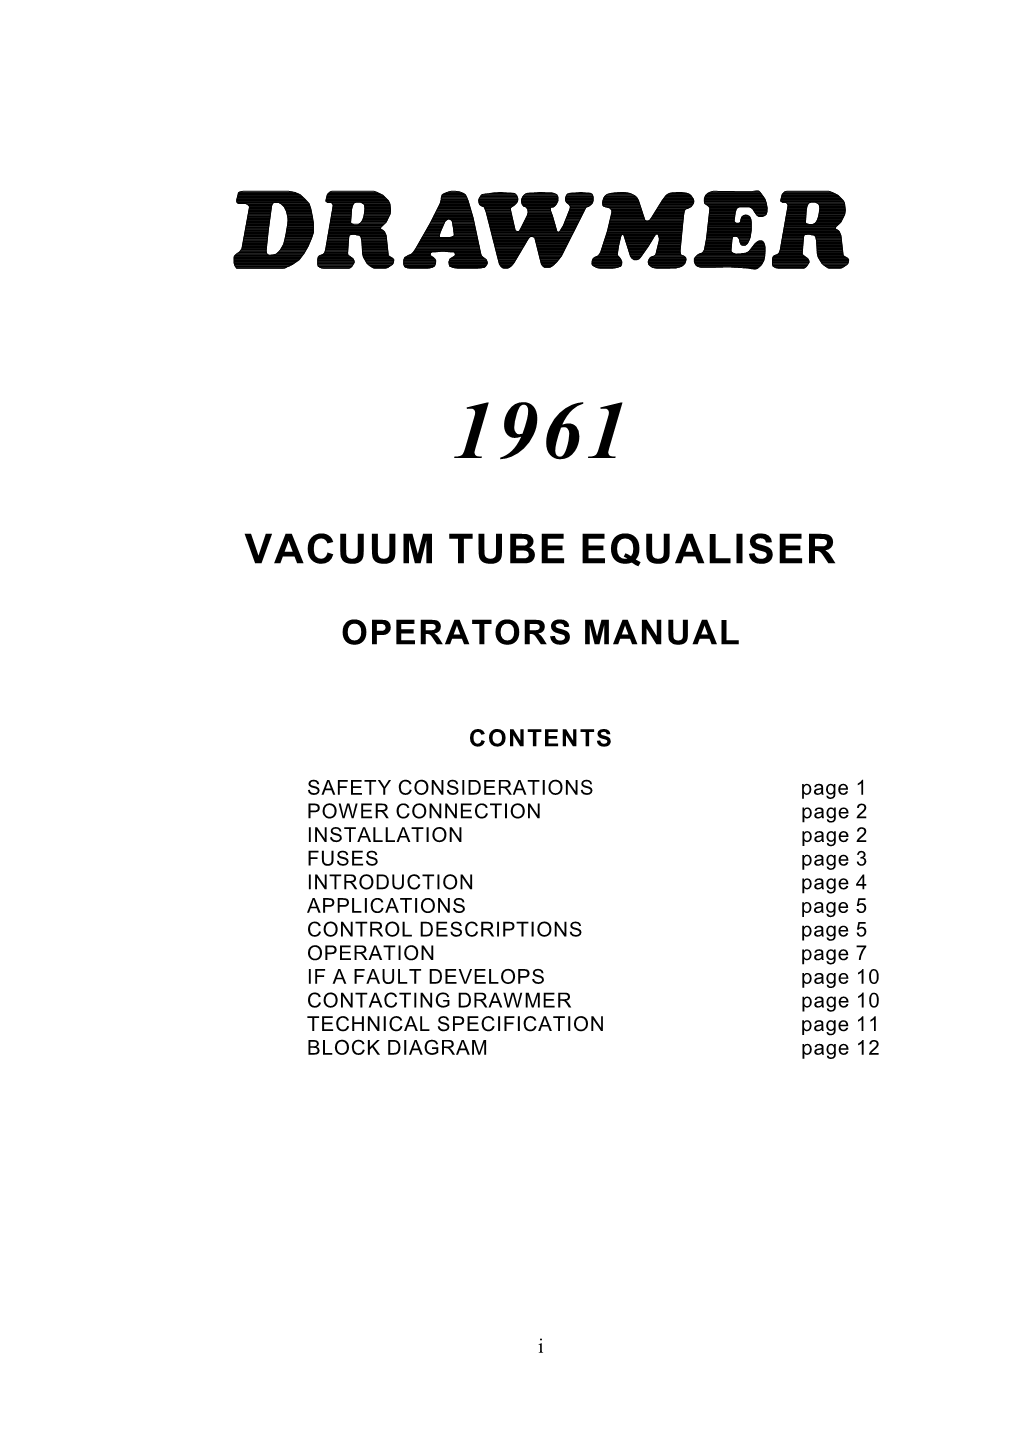 Vacuum Tube Equaliser